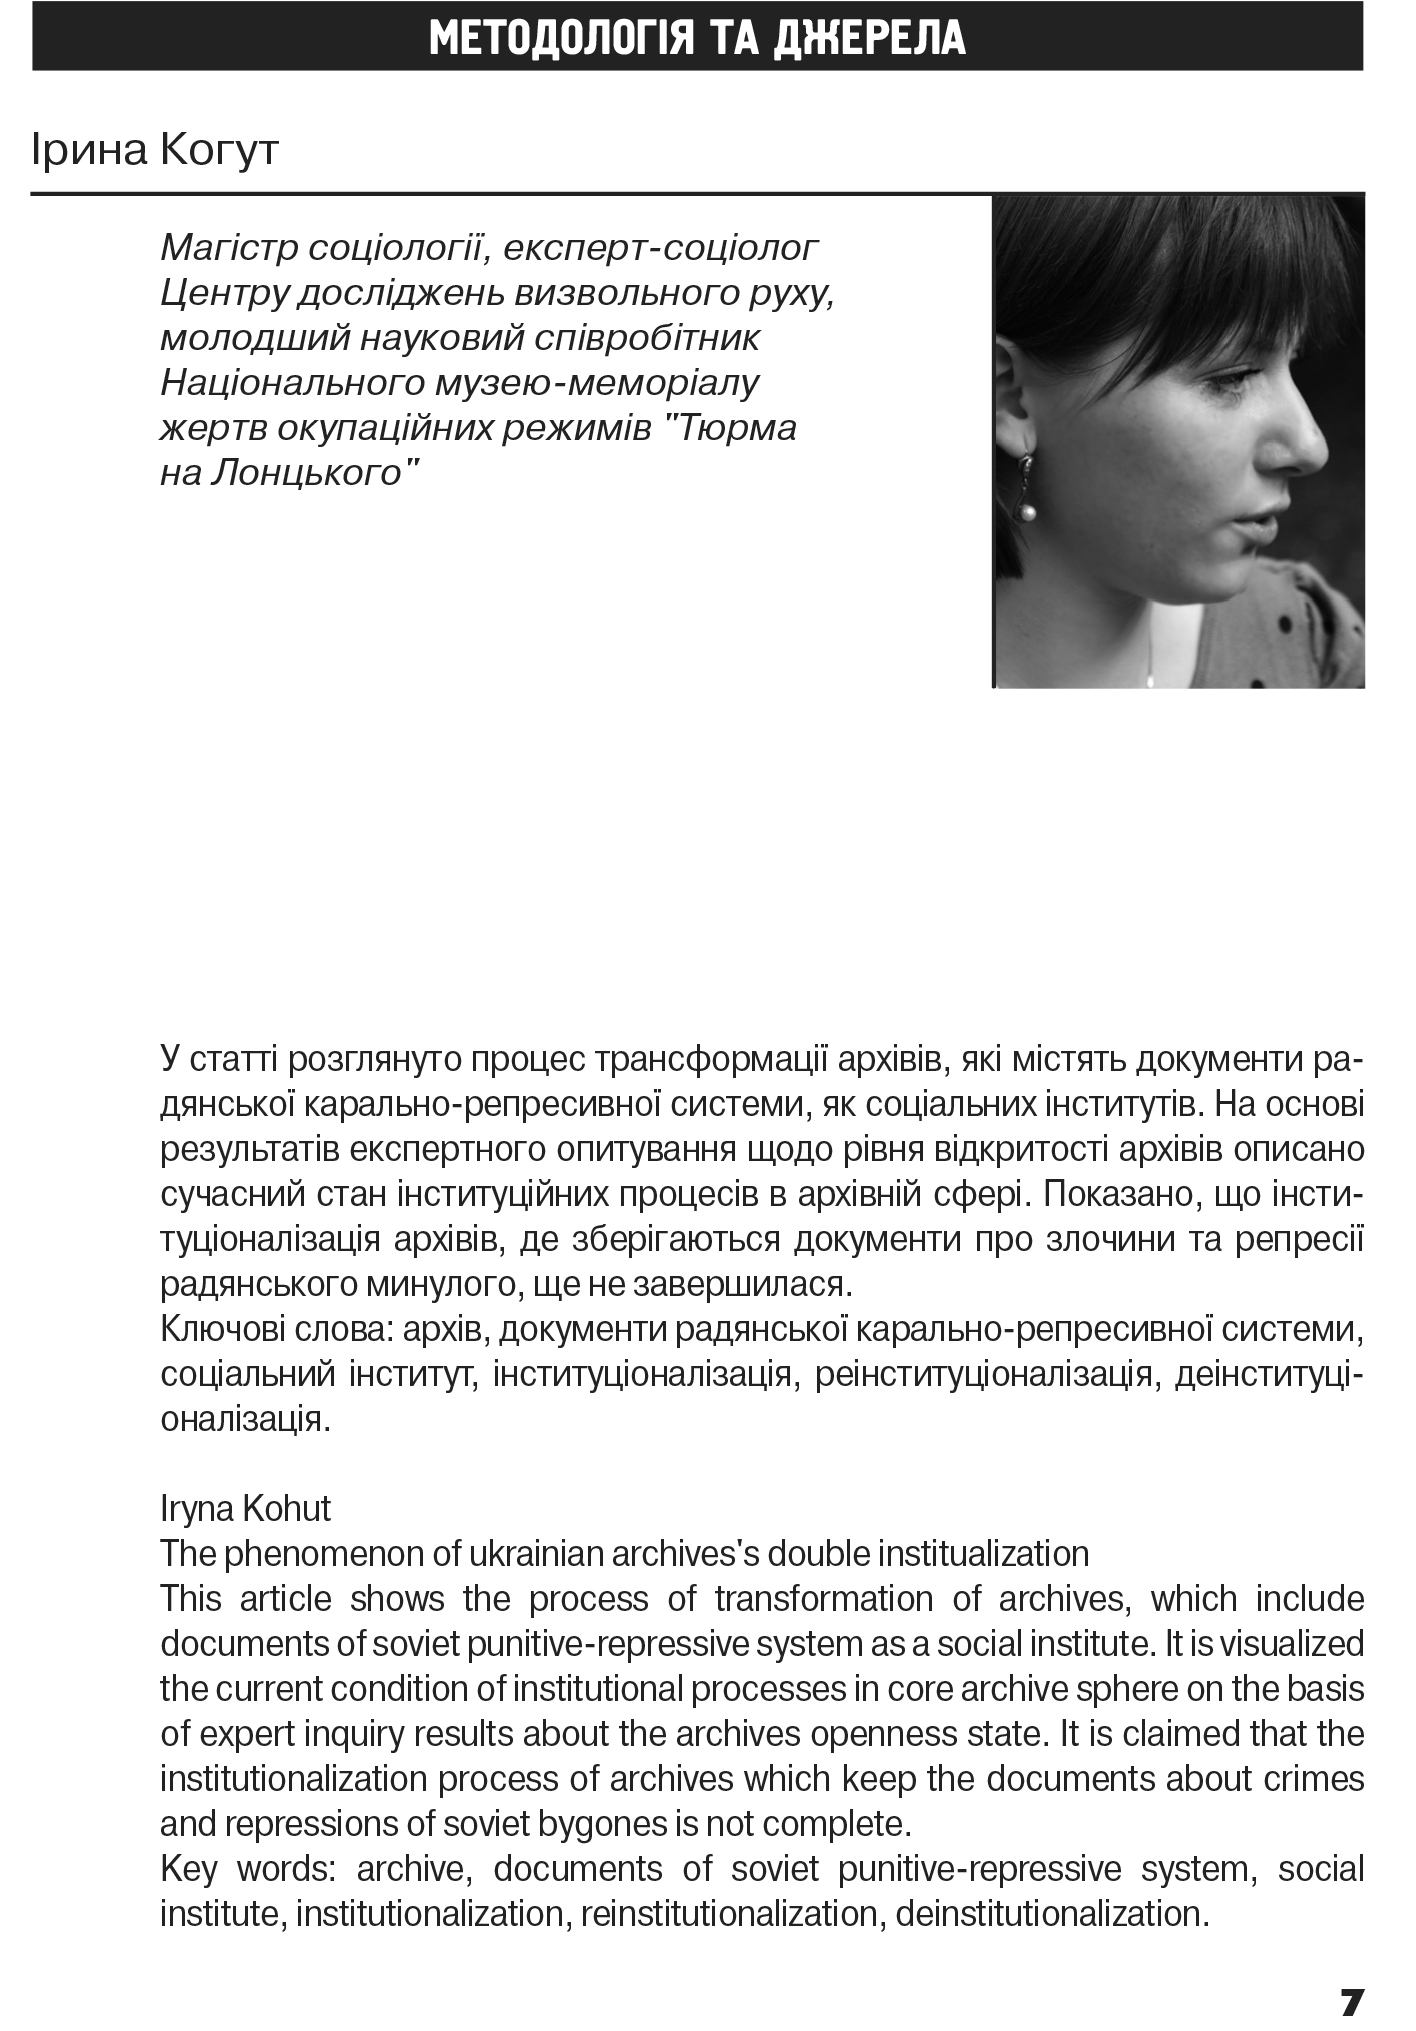 Український визвольний рух №17, ст. 7 - 20